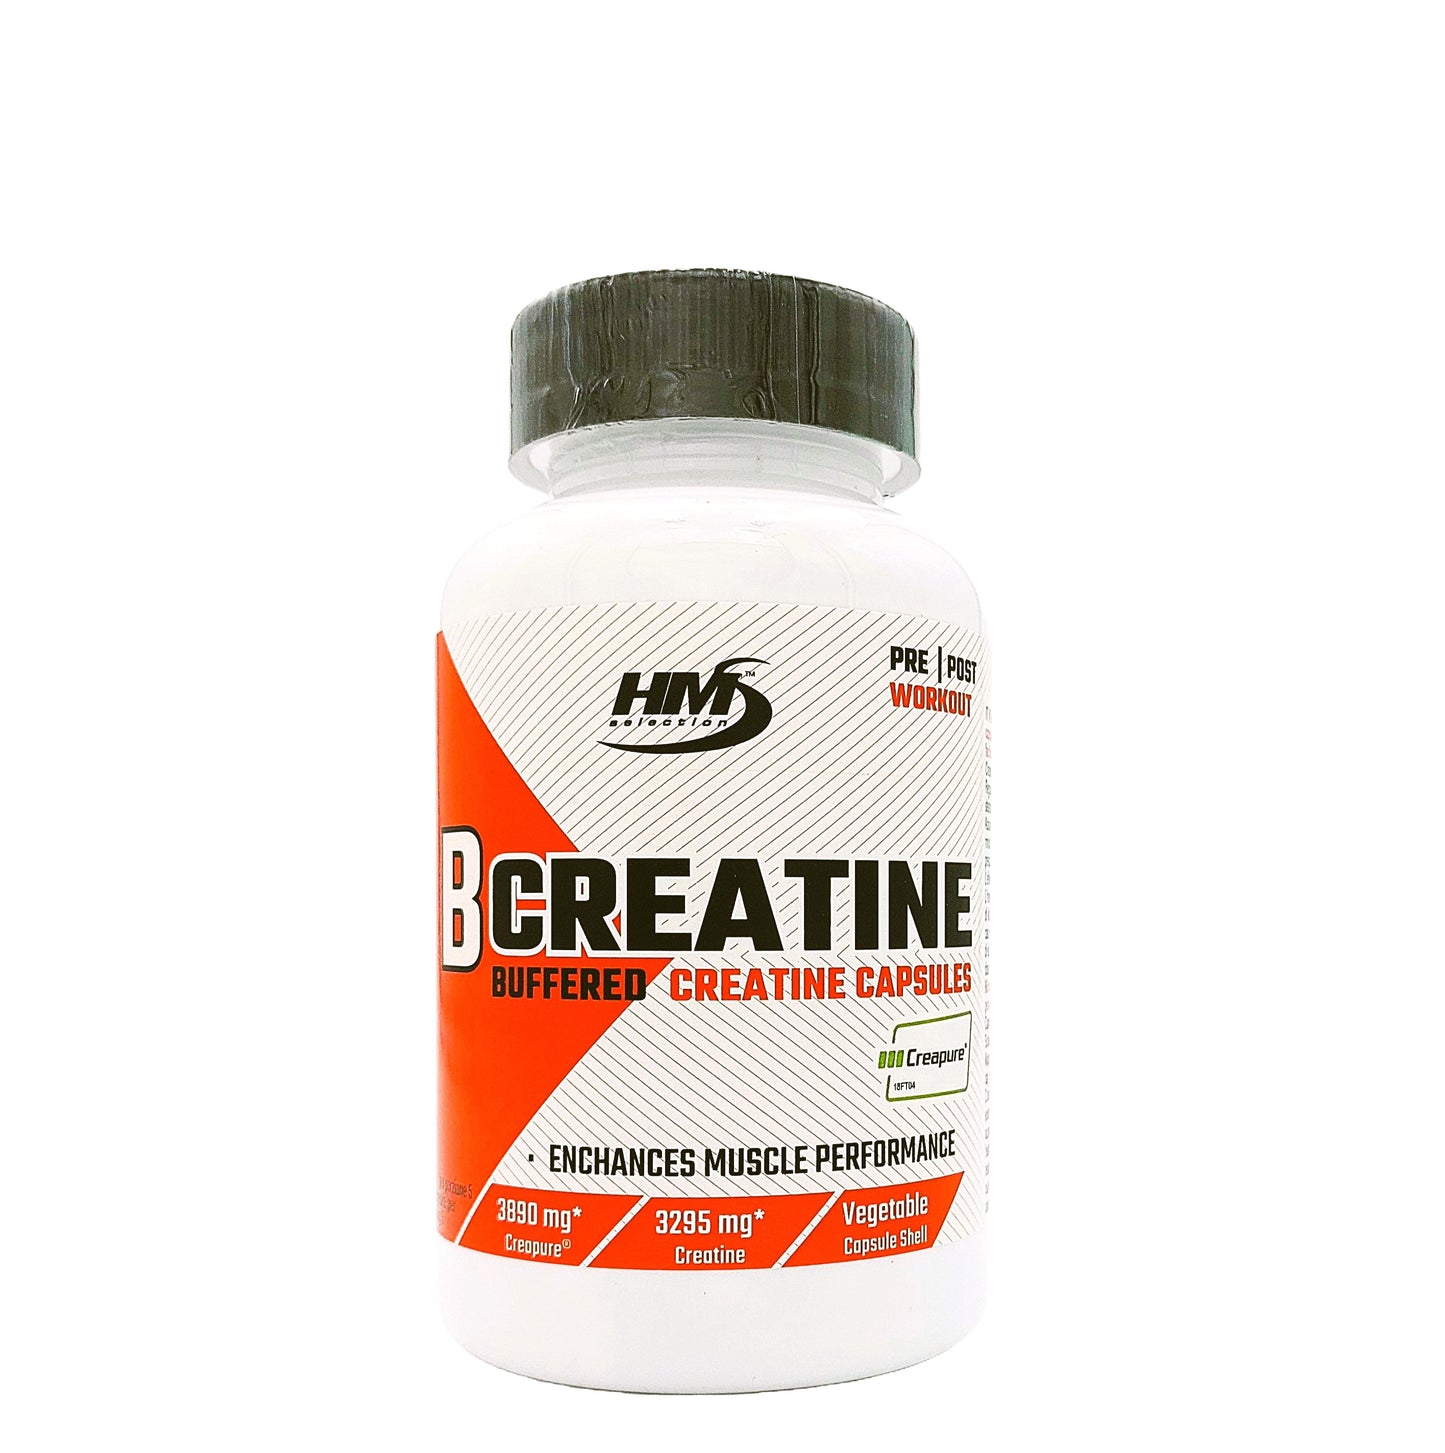 B CREATINE, 100 capsule - integratore alimentare di creatina ideale per adulti che praticano un esercizio fisico intenso